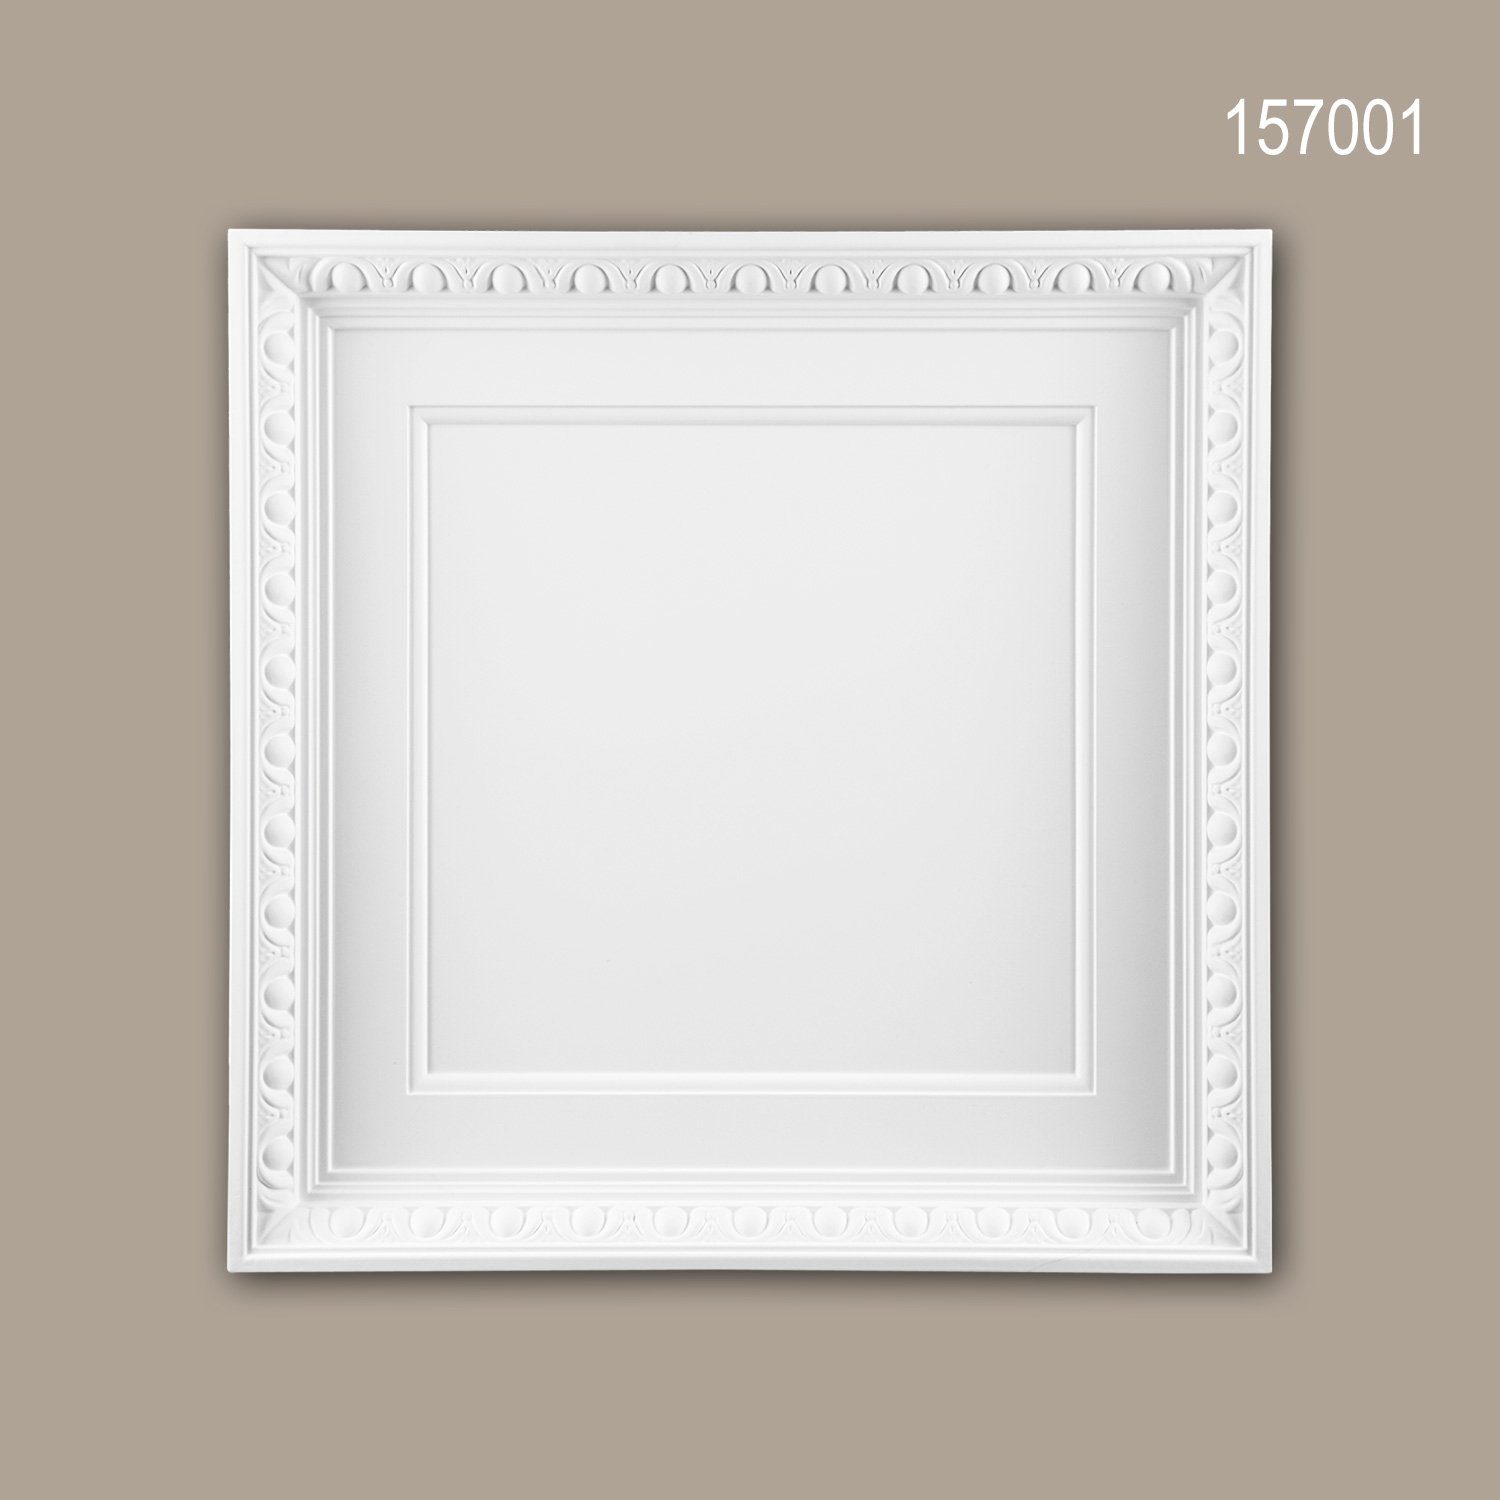 Profhome Deckenplatten 157001, BxL: 60x60 cm, 0.36 qm, (Dekorpaneel, 1-tlg., Deckenplatte Stuck-Zierelement Wandpaneel Deckendekoration) weiß vorgrundiert